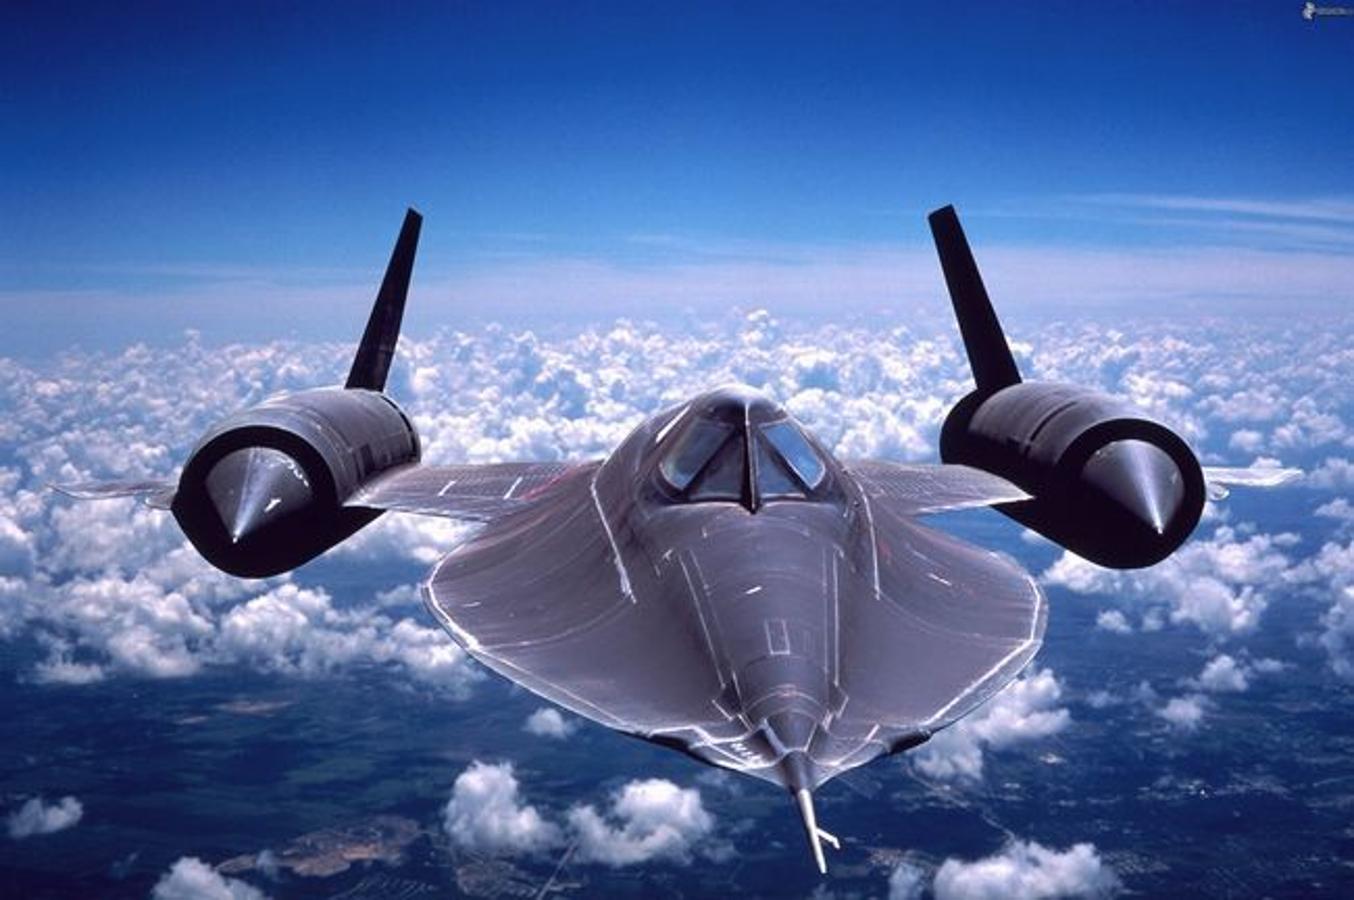 SR-71 Blackbird. Un avión de reconocimiento estratégico de largo alcance operado por la Fuera Aérea de Estados Unidos. Es uno de los aviones a reacción más veloces del mundo y el más veloz con pasajeros, alcanza los 3,5 Mach a una altitud de 100.000 pies